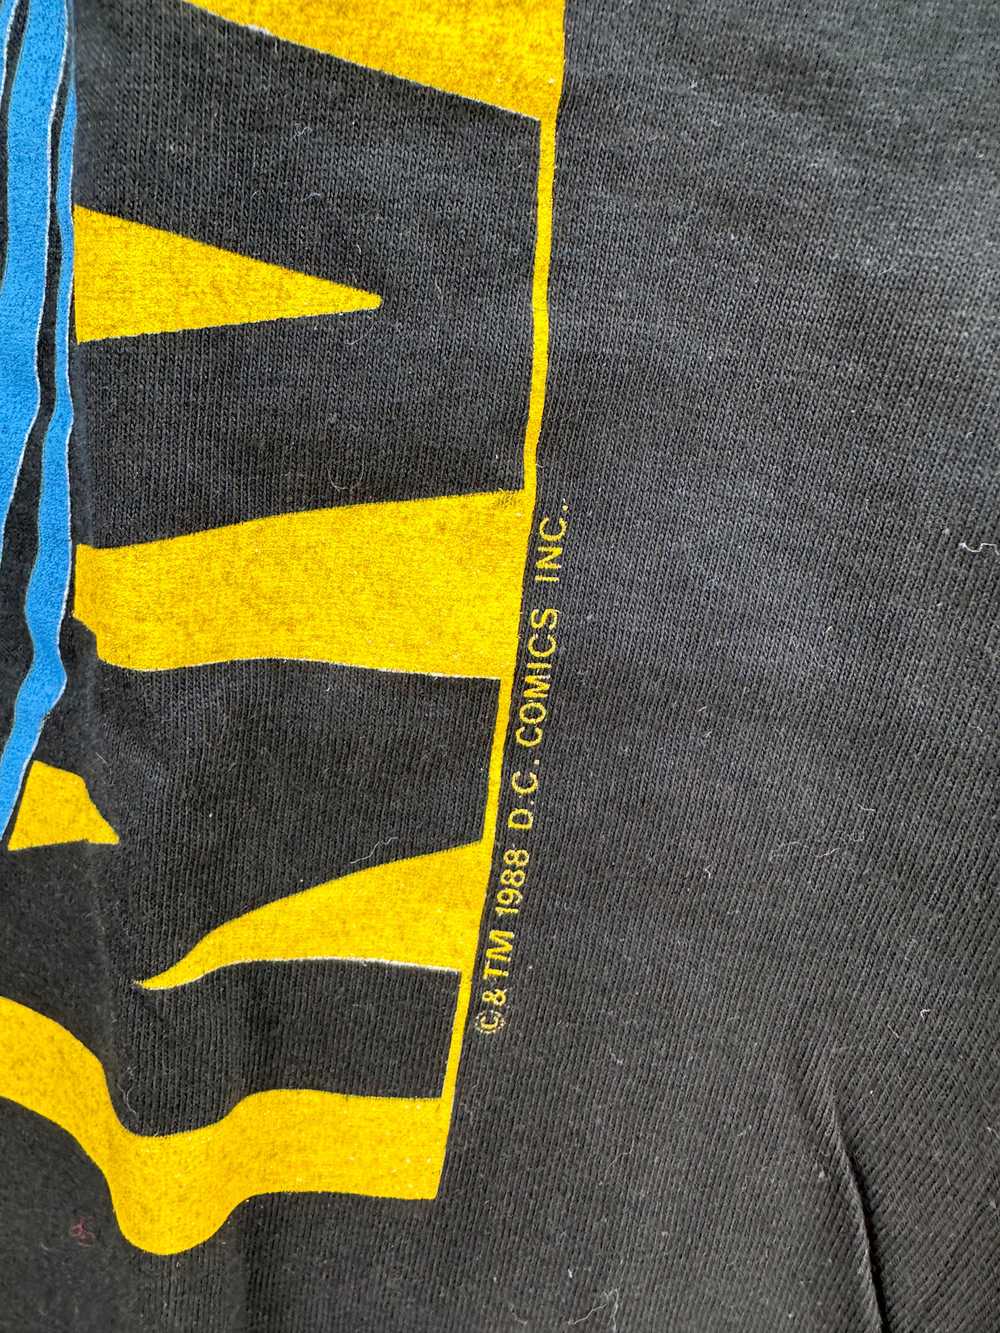 1988 Batman D.C. Comics T-shirt - image 3